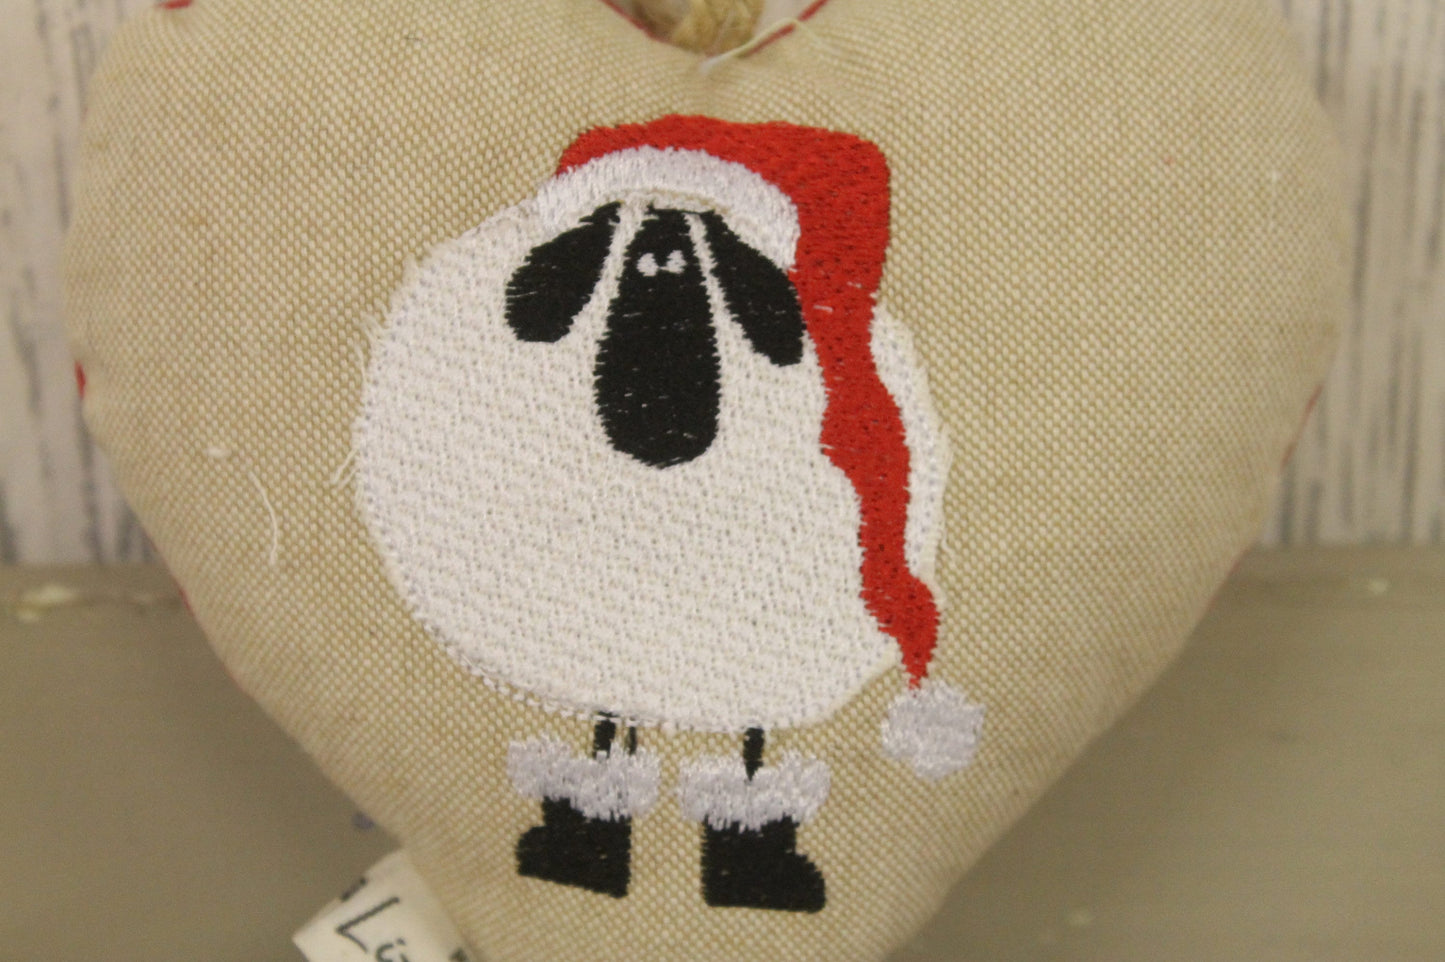 Christmas Sheep wearing Santa Hat Hanging Heart- Festive sheep hanging heart- -Christmas decorative Hanging Ornament-Festive decoration